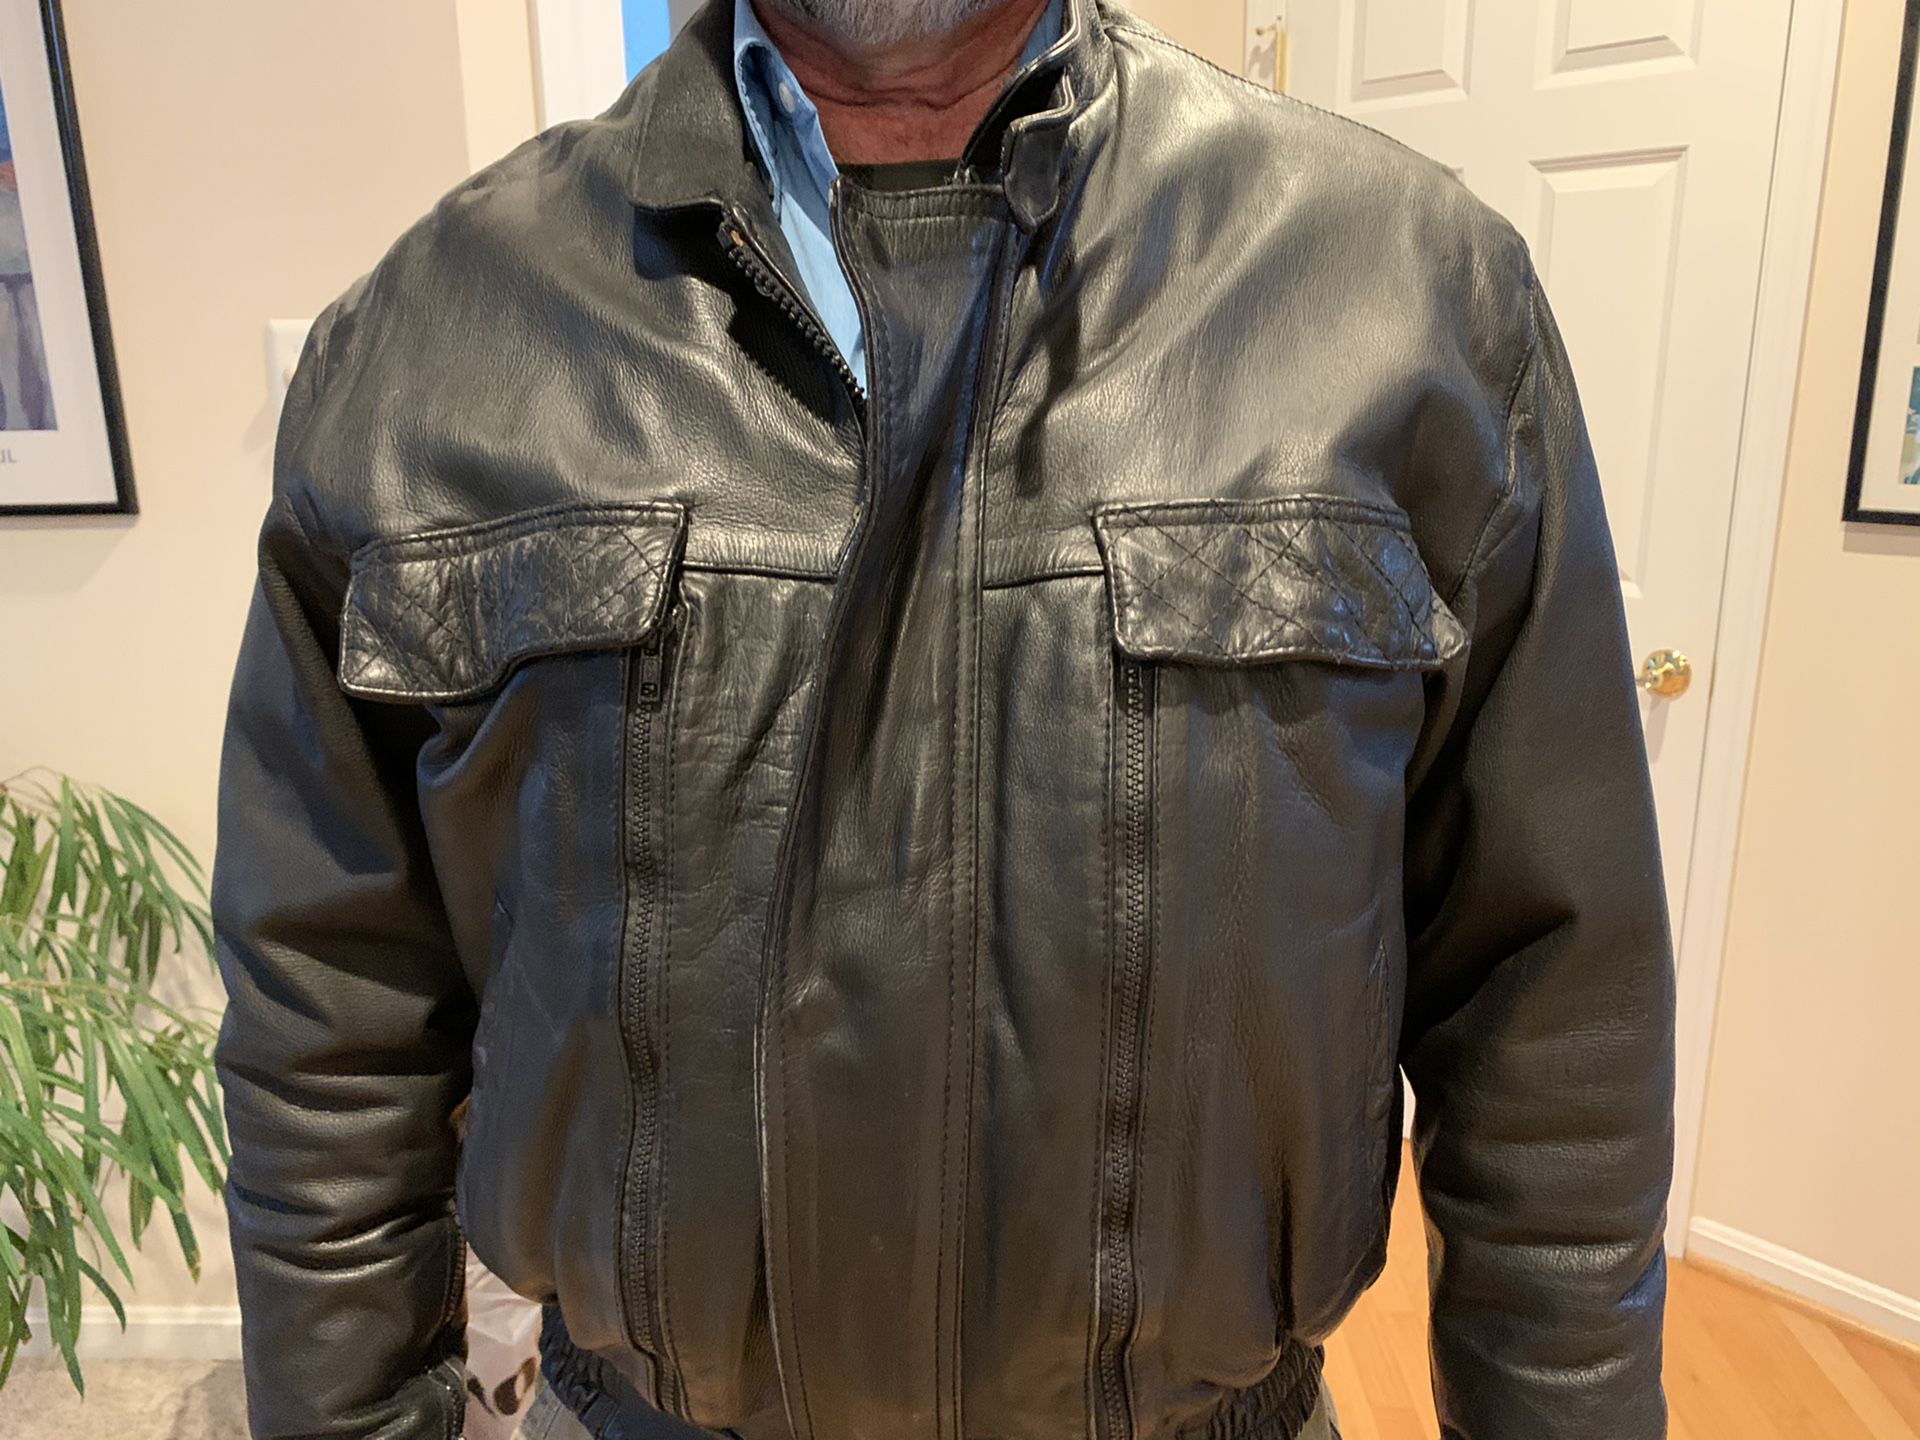 generic leather motorcycle jacket vented medium size but large